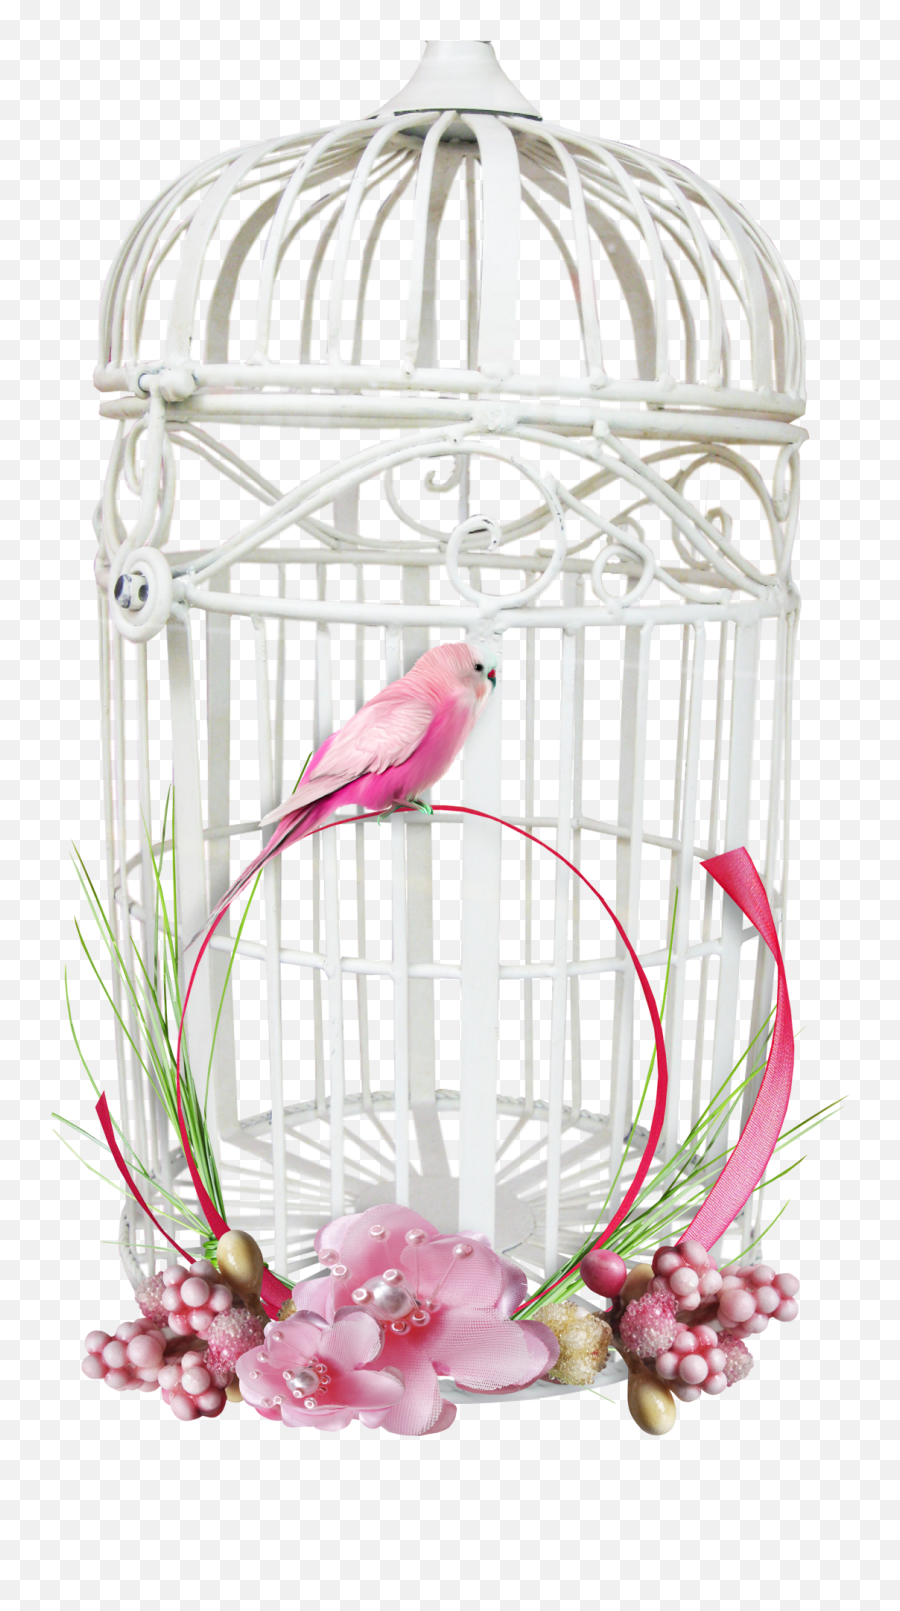 White Bird Cage Png Image - Purepng Free Transparent Cc0 Transparent Background Png Transparent Birdcage Emoji,Cage Png